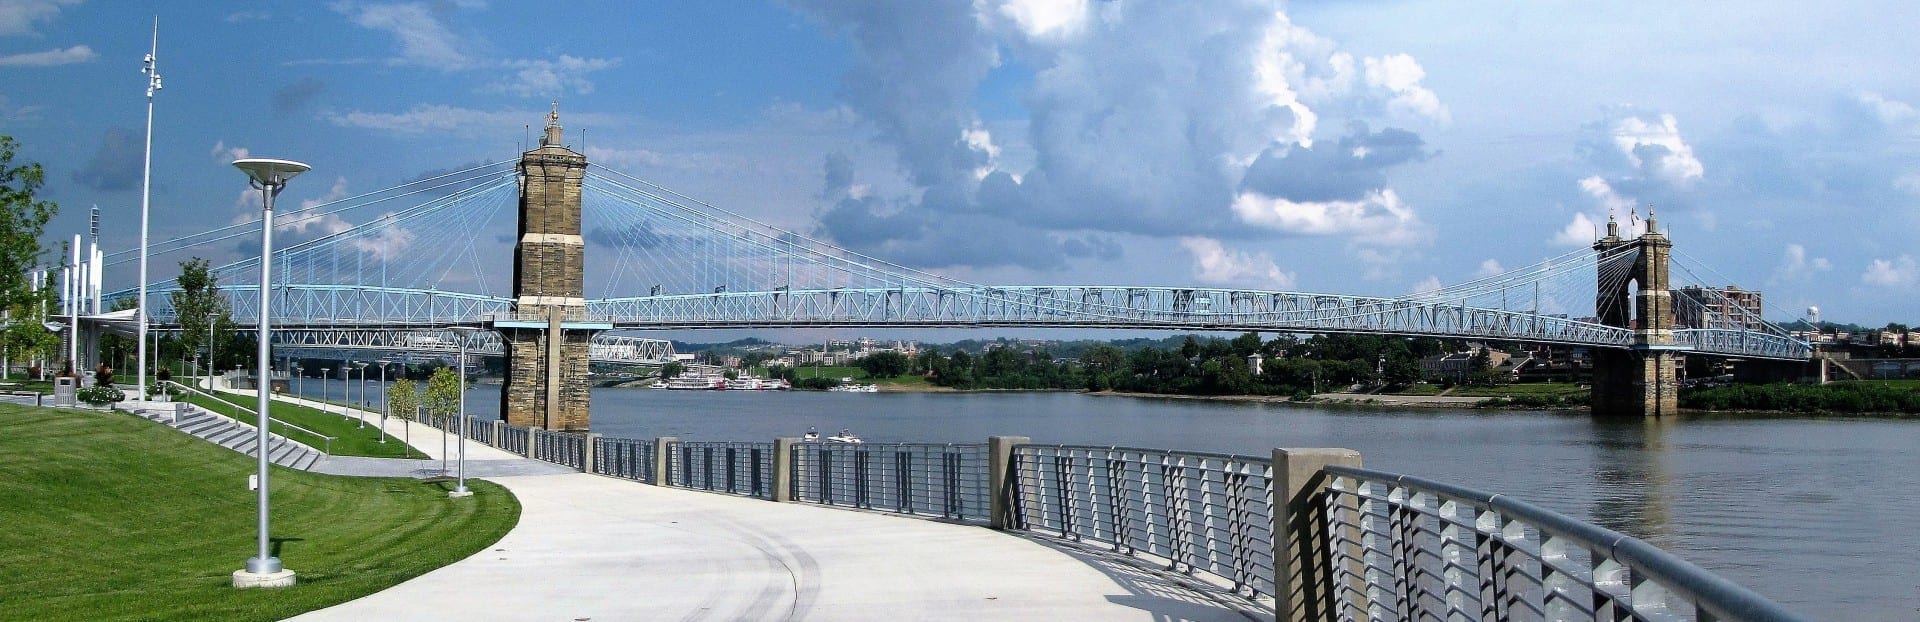 El puente colgante Roebling del Parque Smale Cincinnati Estados Unidos